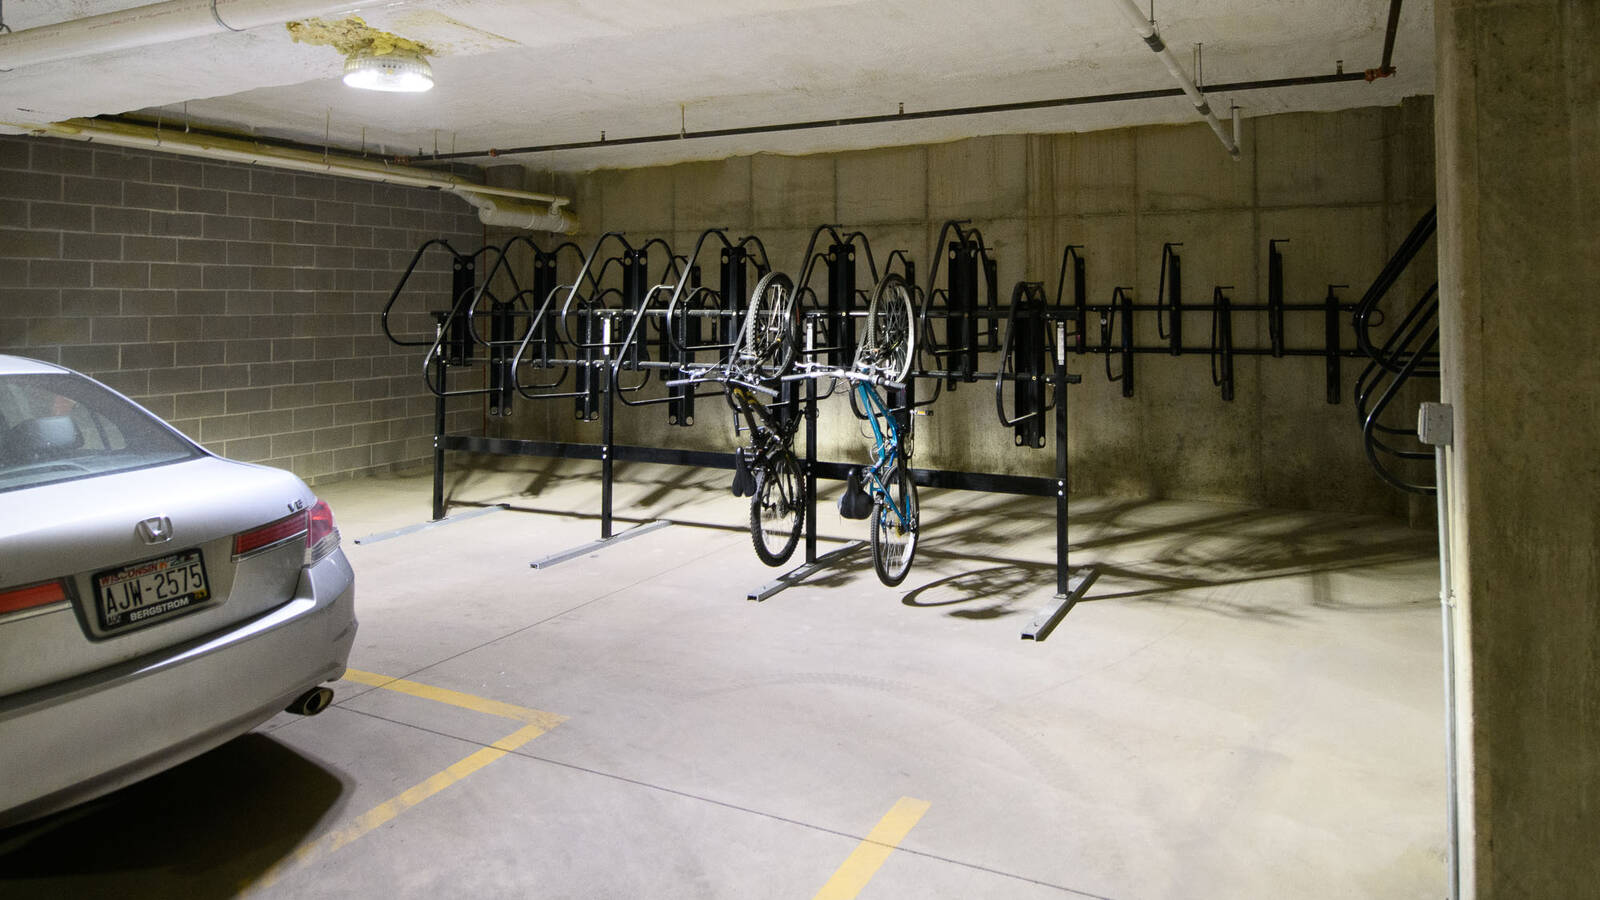 Underground parking garage with hanging bike parking.